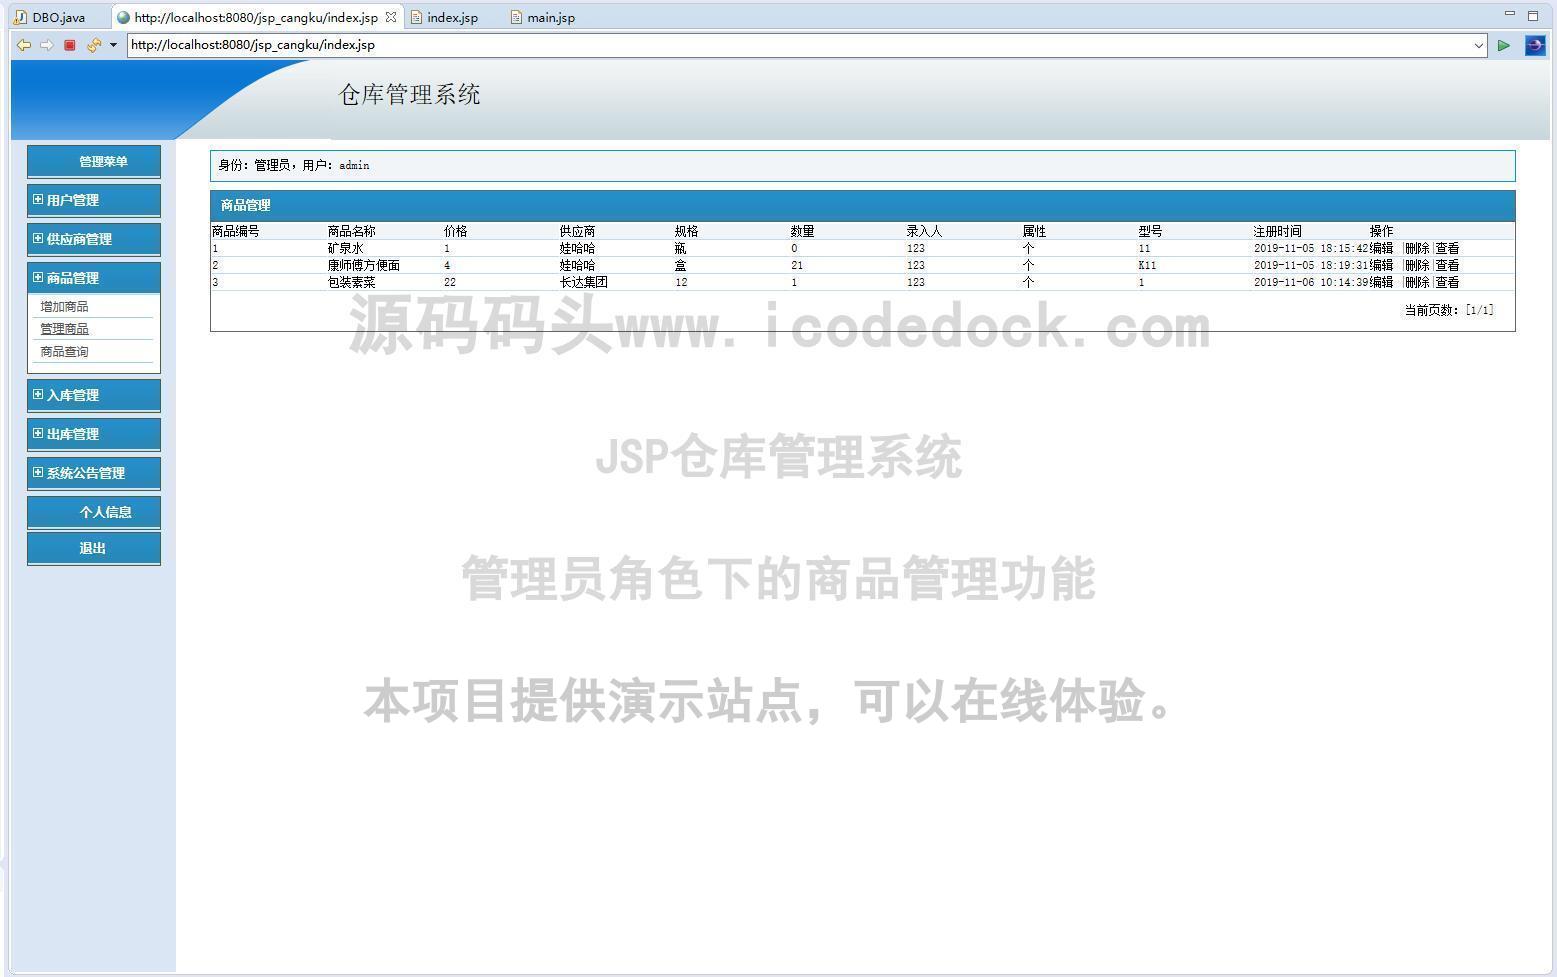 源码码头-JSP仓库管理系统-管理员角色-商品管理